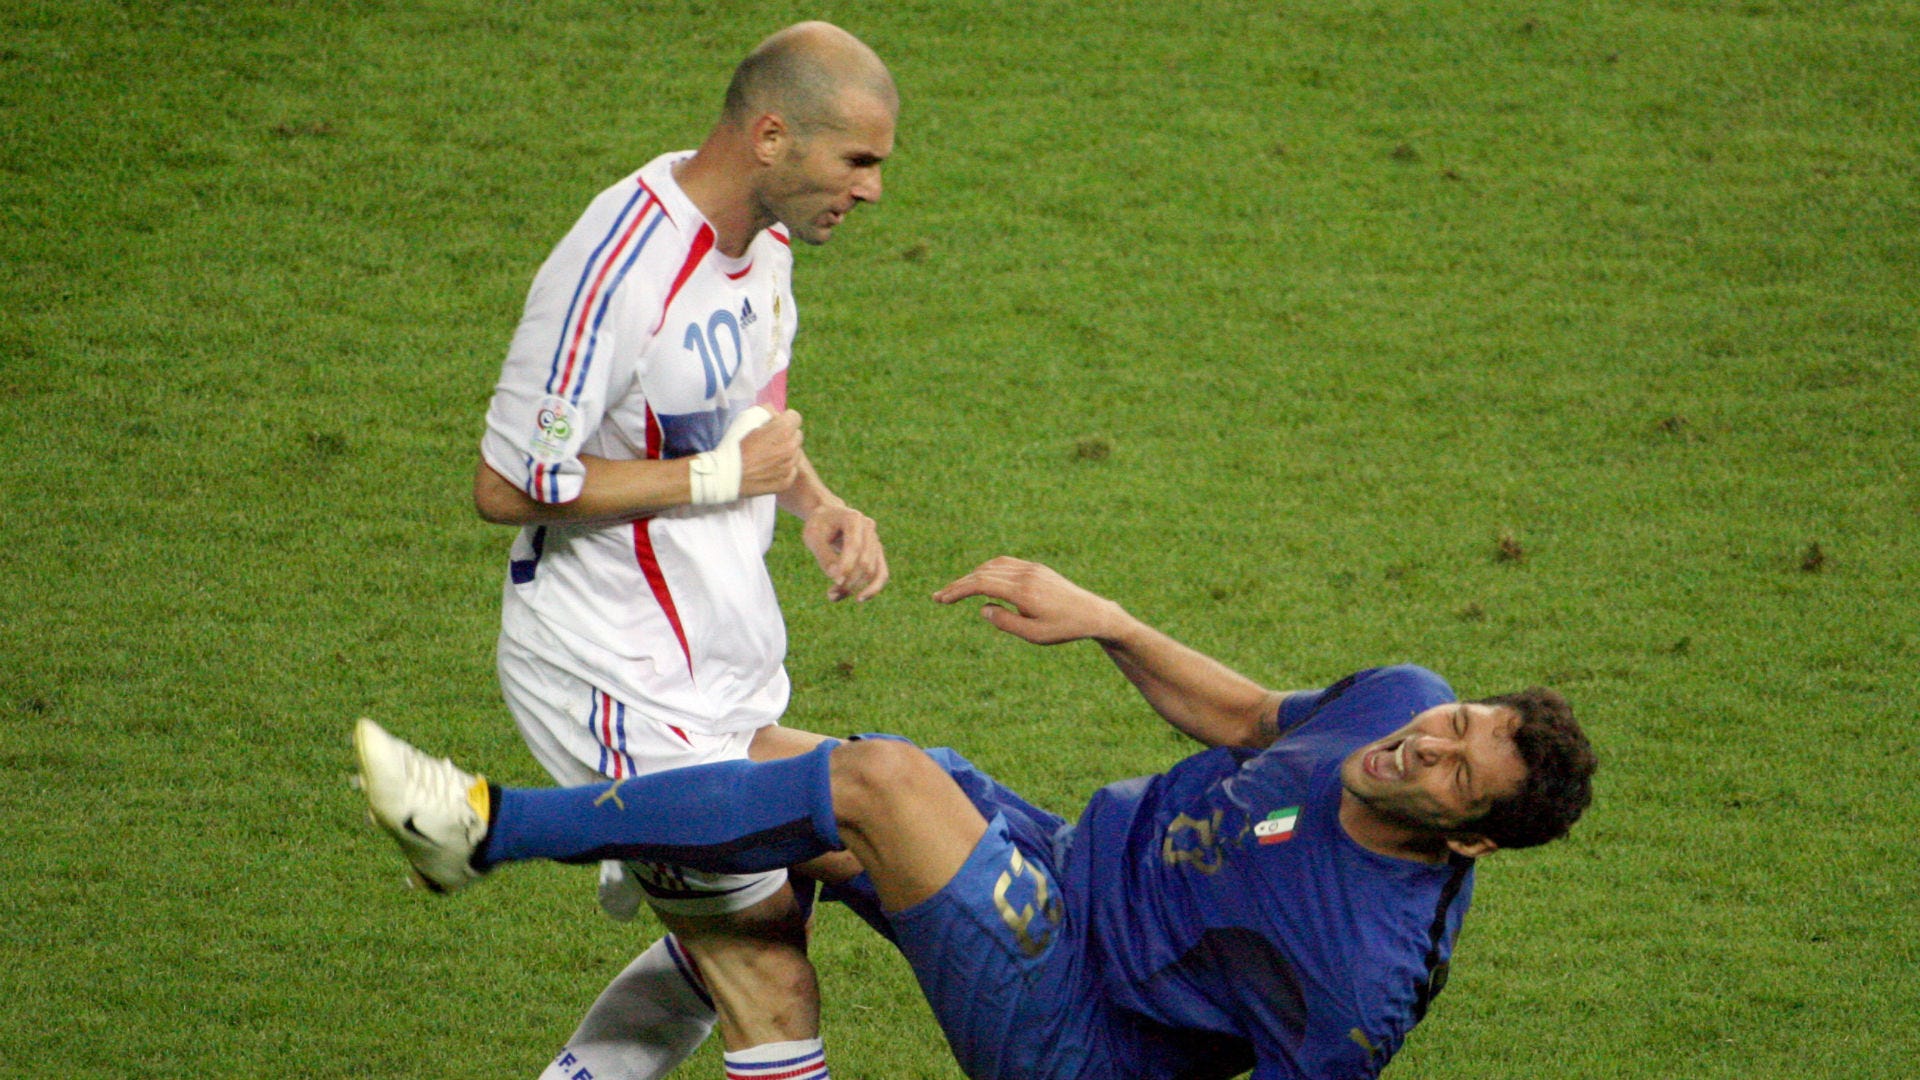 Zinedine Zidane & Marco Materazzi